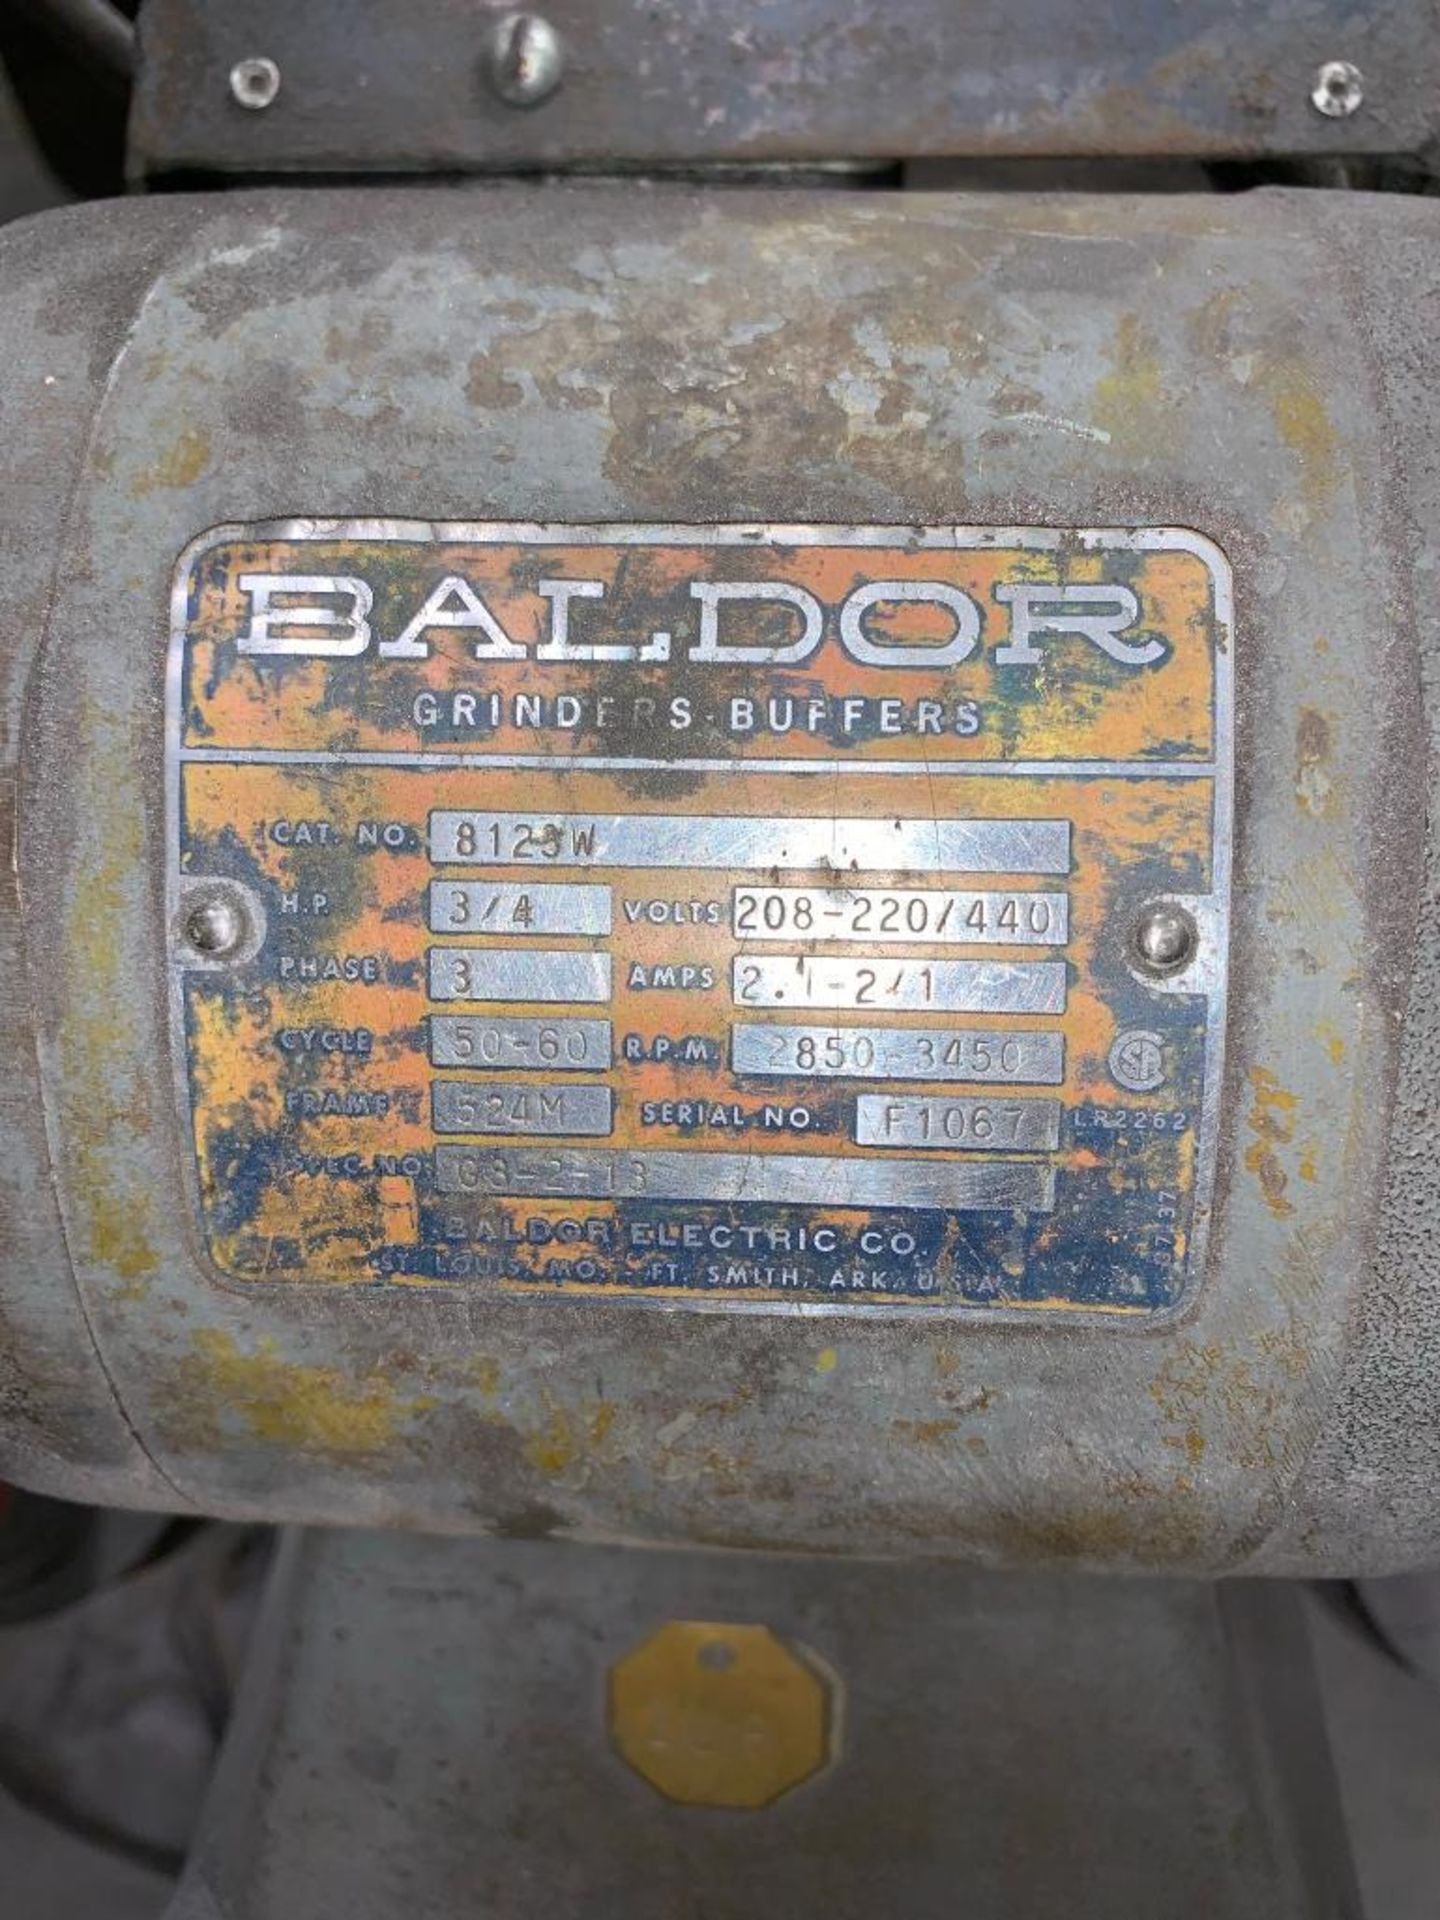 BALDOR 6'' PEDESTAL GRINDER, 3/4 HP, 208-220/480 V., 3-PH, 2,850-3,350 RPM - Image 3 of 3